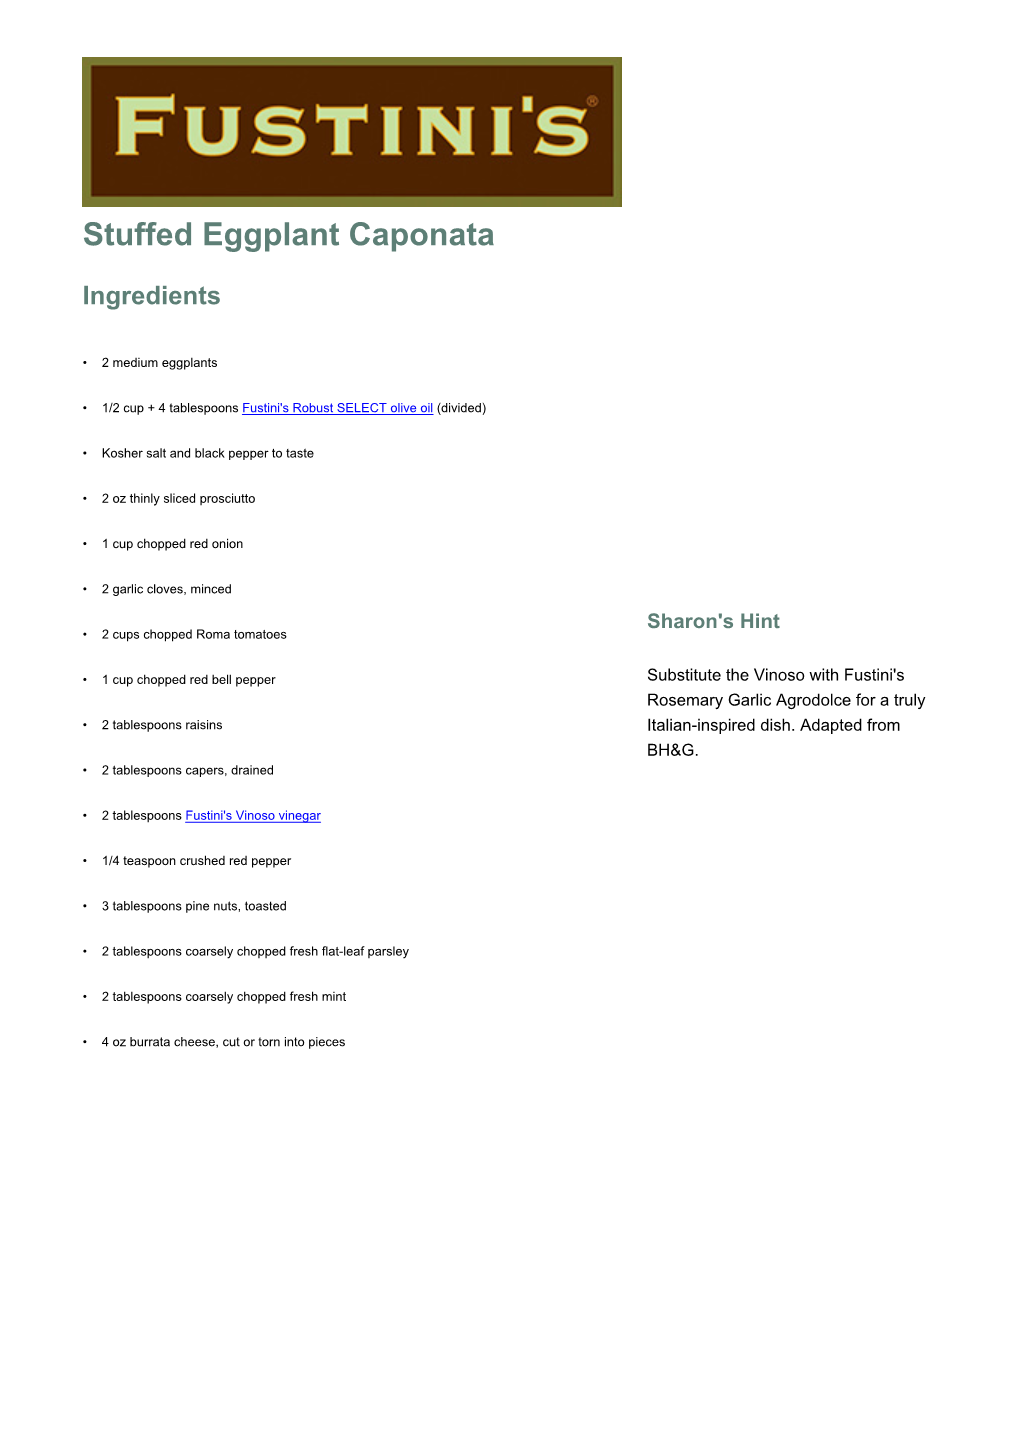 Stuffed Eggplant Caponata